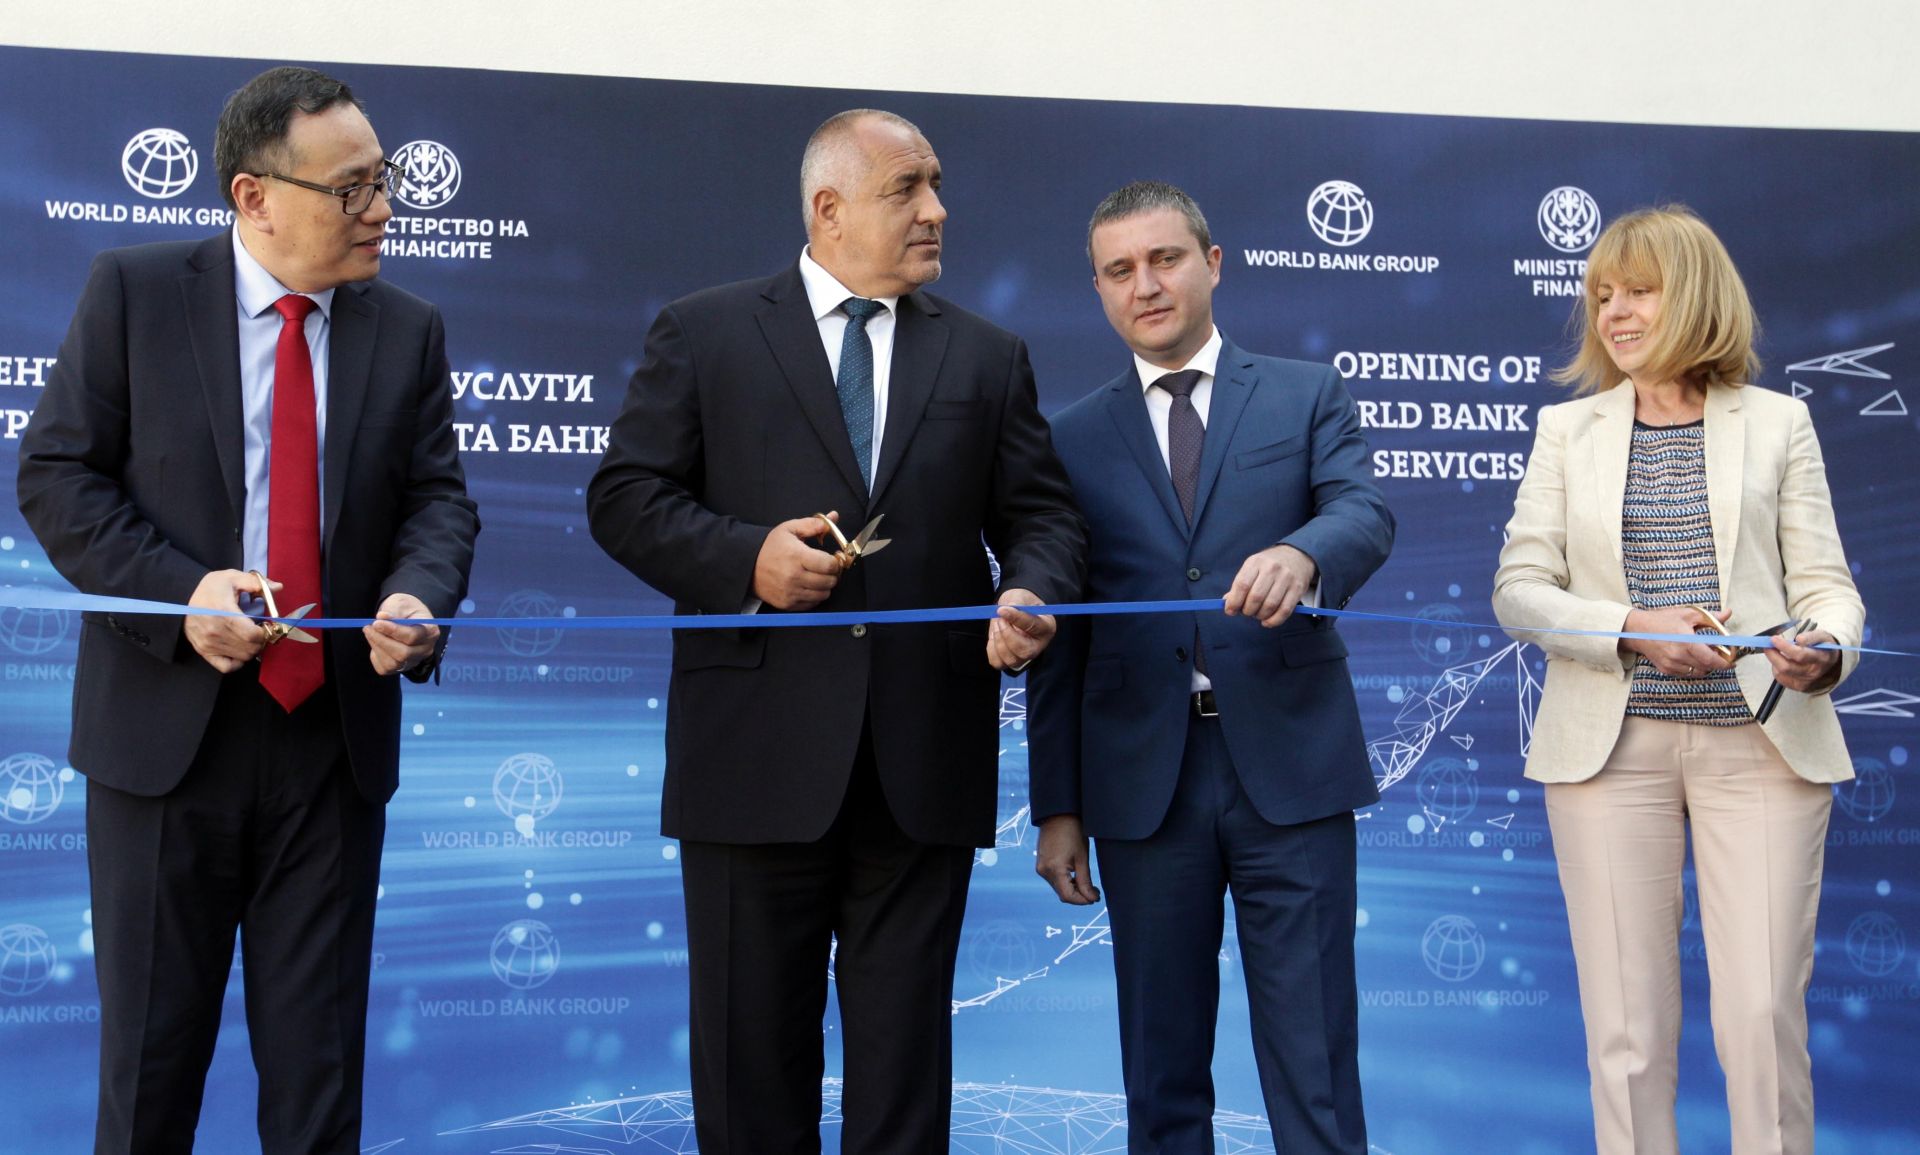 Предстои изграждането на един от най-важните коридори - София - Скопие - Тирана, каза премиерът на откриването на нов център за споделени услуги на Групата на СБ